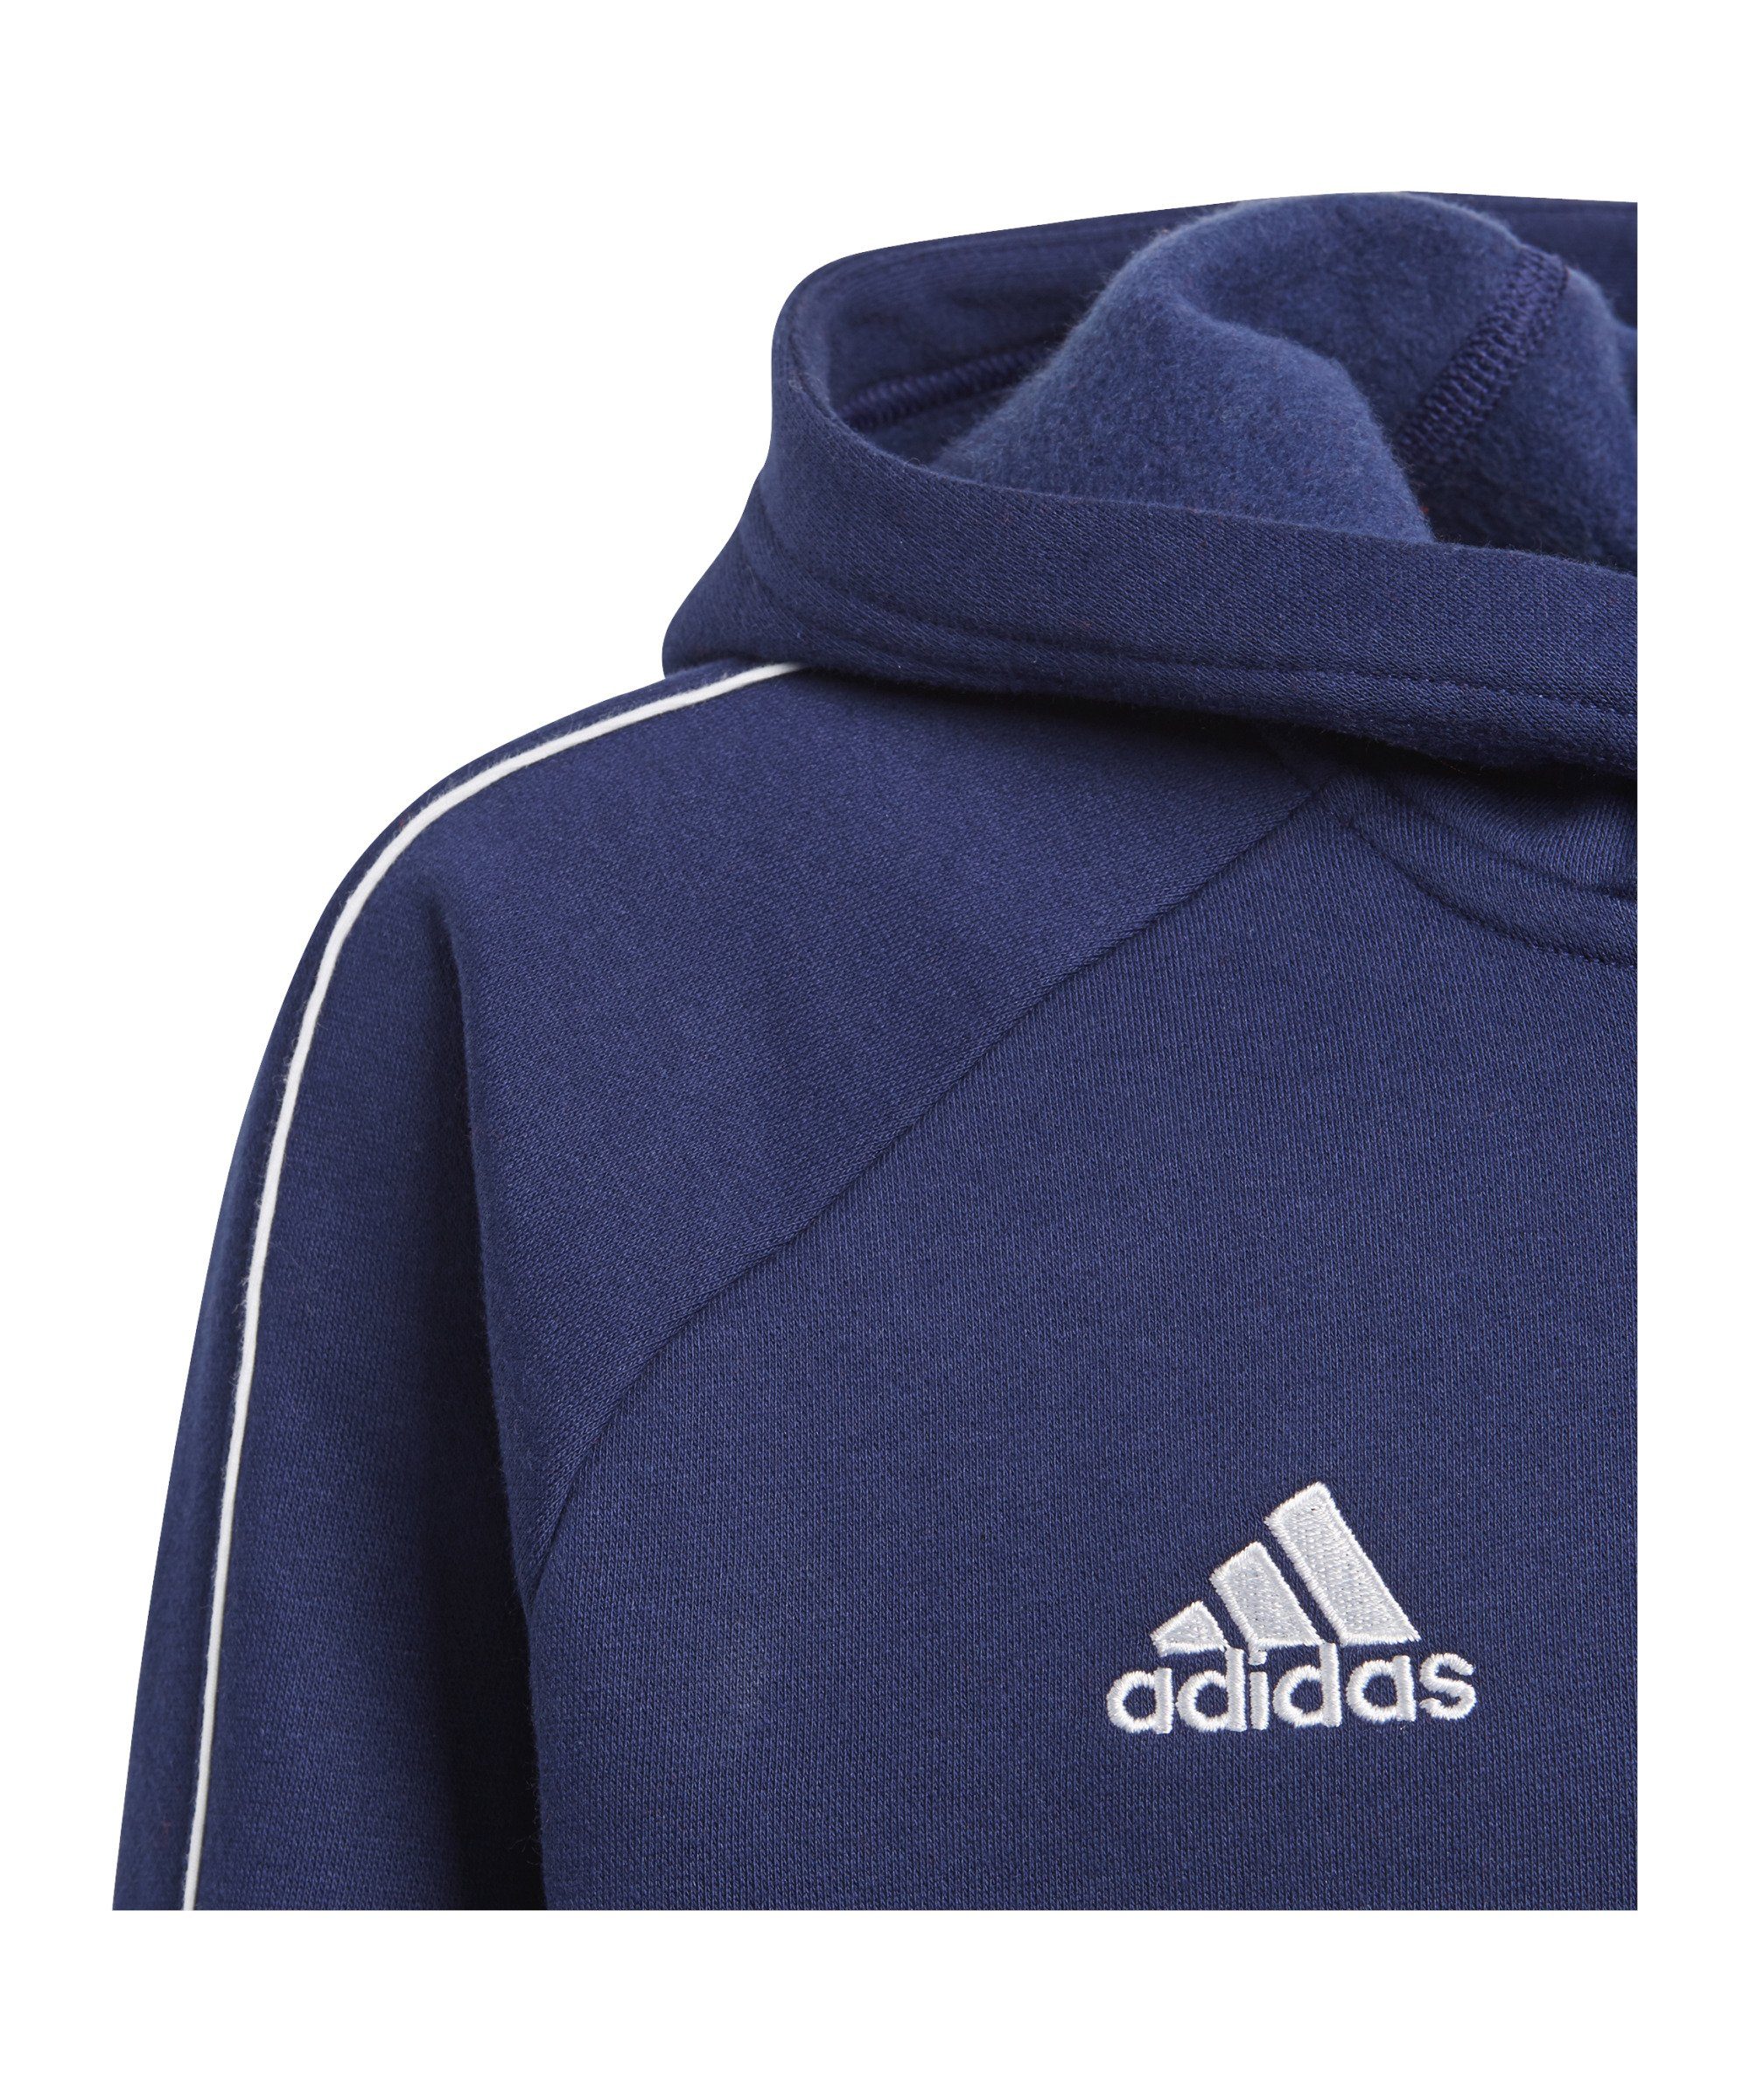 adidas 18 Kids Performance Sweatshirt blauweiss Core Hoody Kapuzenswearshirt